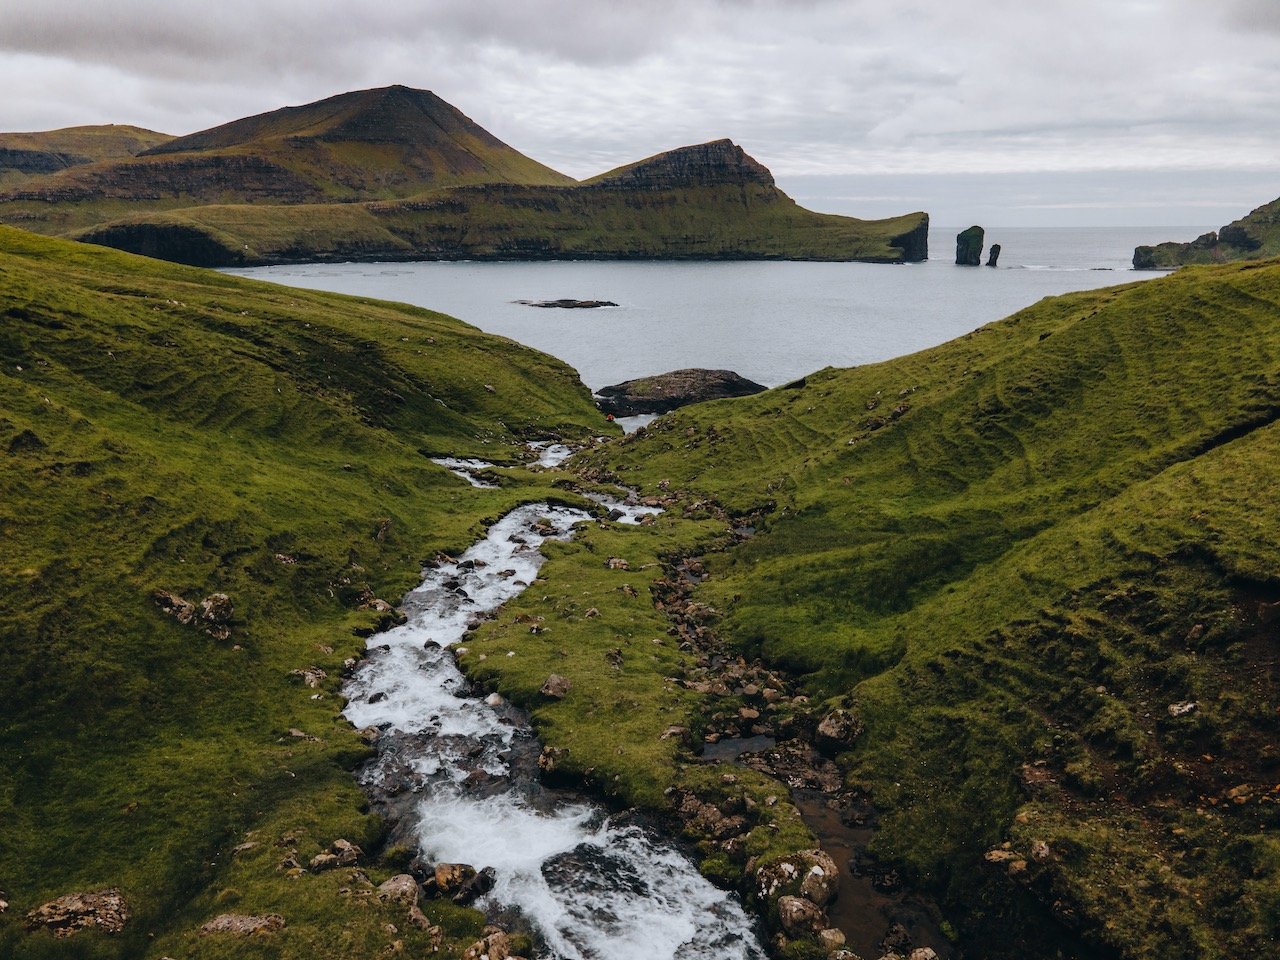   Skarðsáfossur, Vágar, Faroe Islands (ISO 100, 4.5 mm,  f /2.8, 1/40 s)  